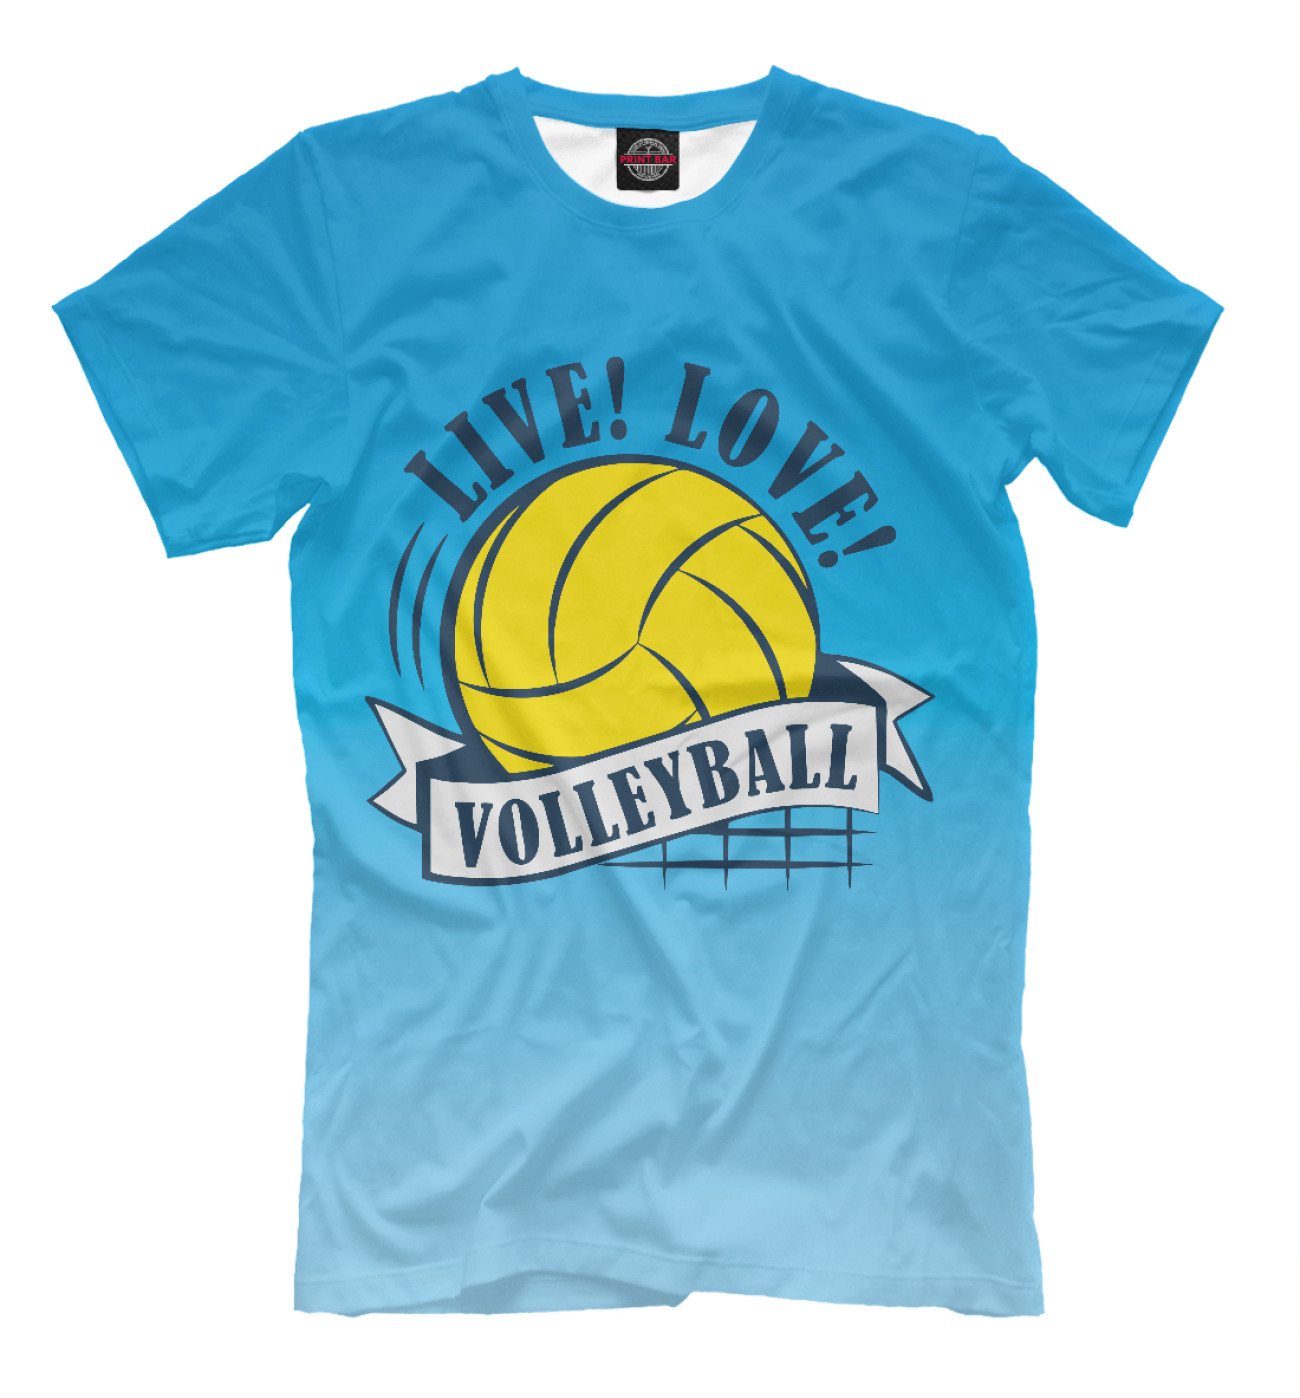 Мужская Футболка Live! Live! Volleyball!, артикул: VLB-312680-fut-2